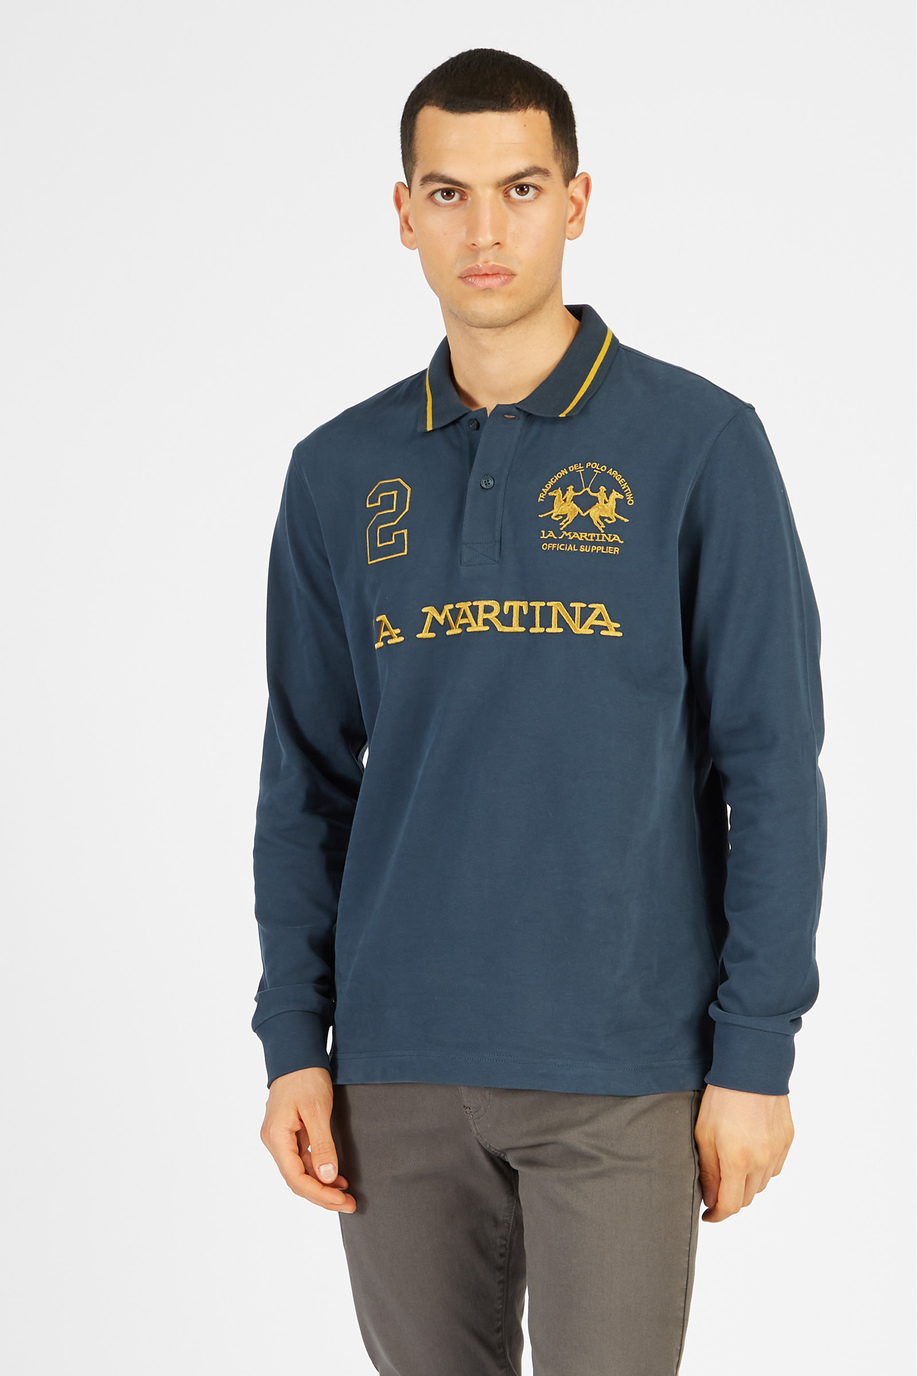 Herren-Poloshirt aus Baumwolle mit langen Ärmeln - Neuheiten | La Martina - Official Online Shop